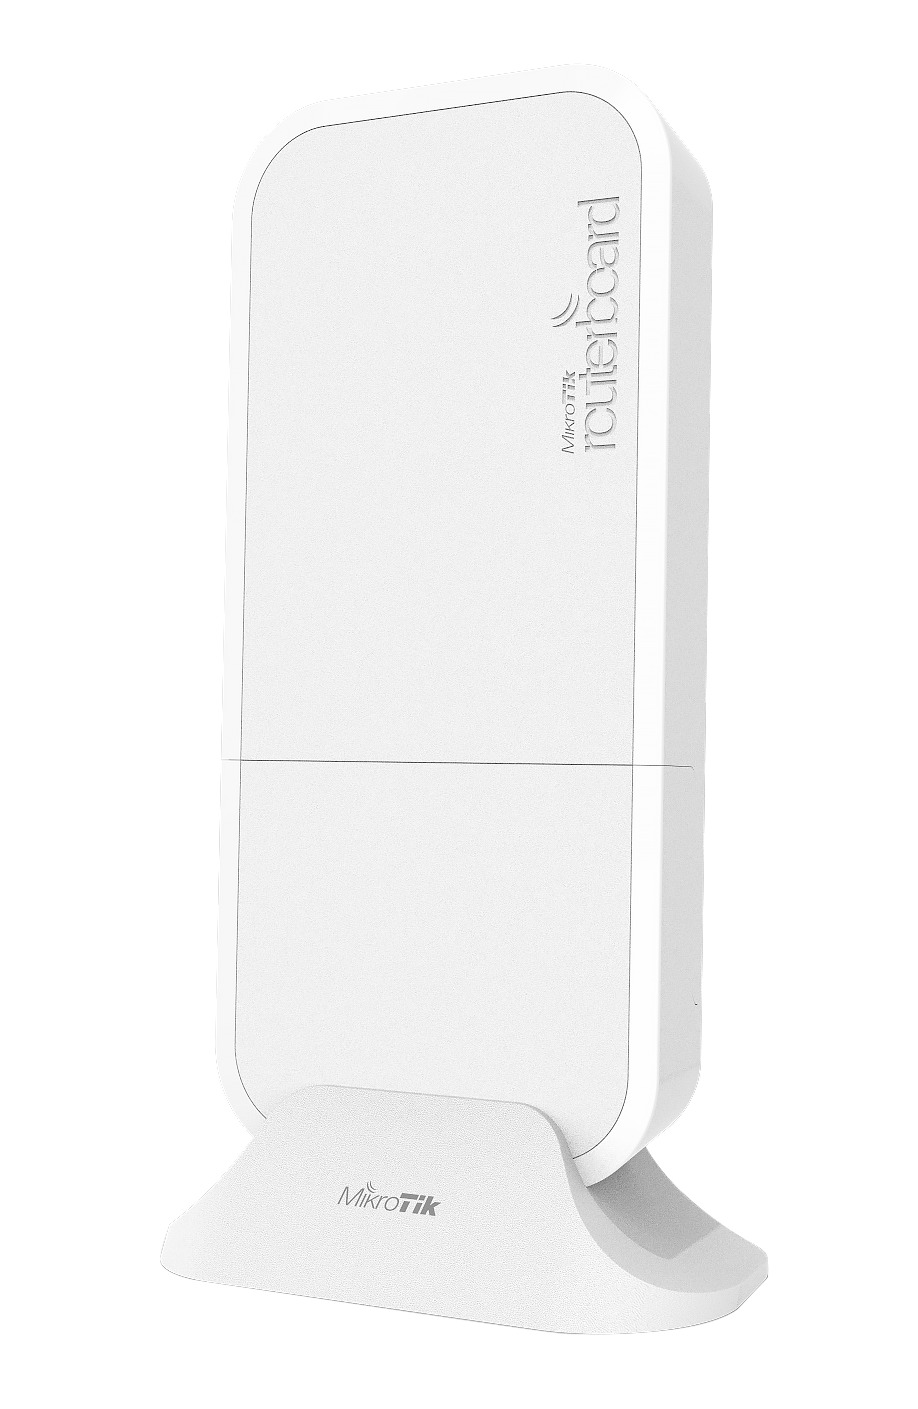 Mikrotik New RBwAPR-2nD&R11e-LTE wAP LTE Outdoor Kit with Modem & 2.4GHz Wi-Fi